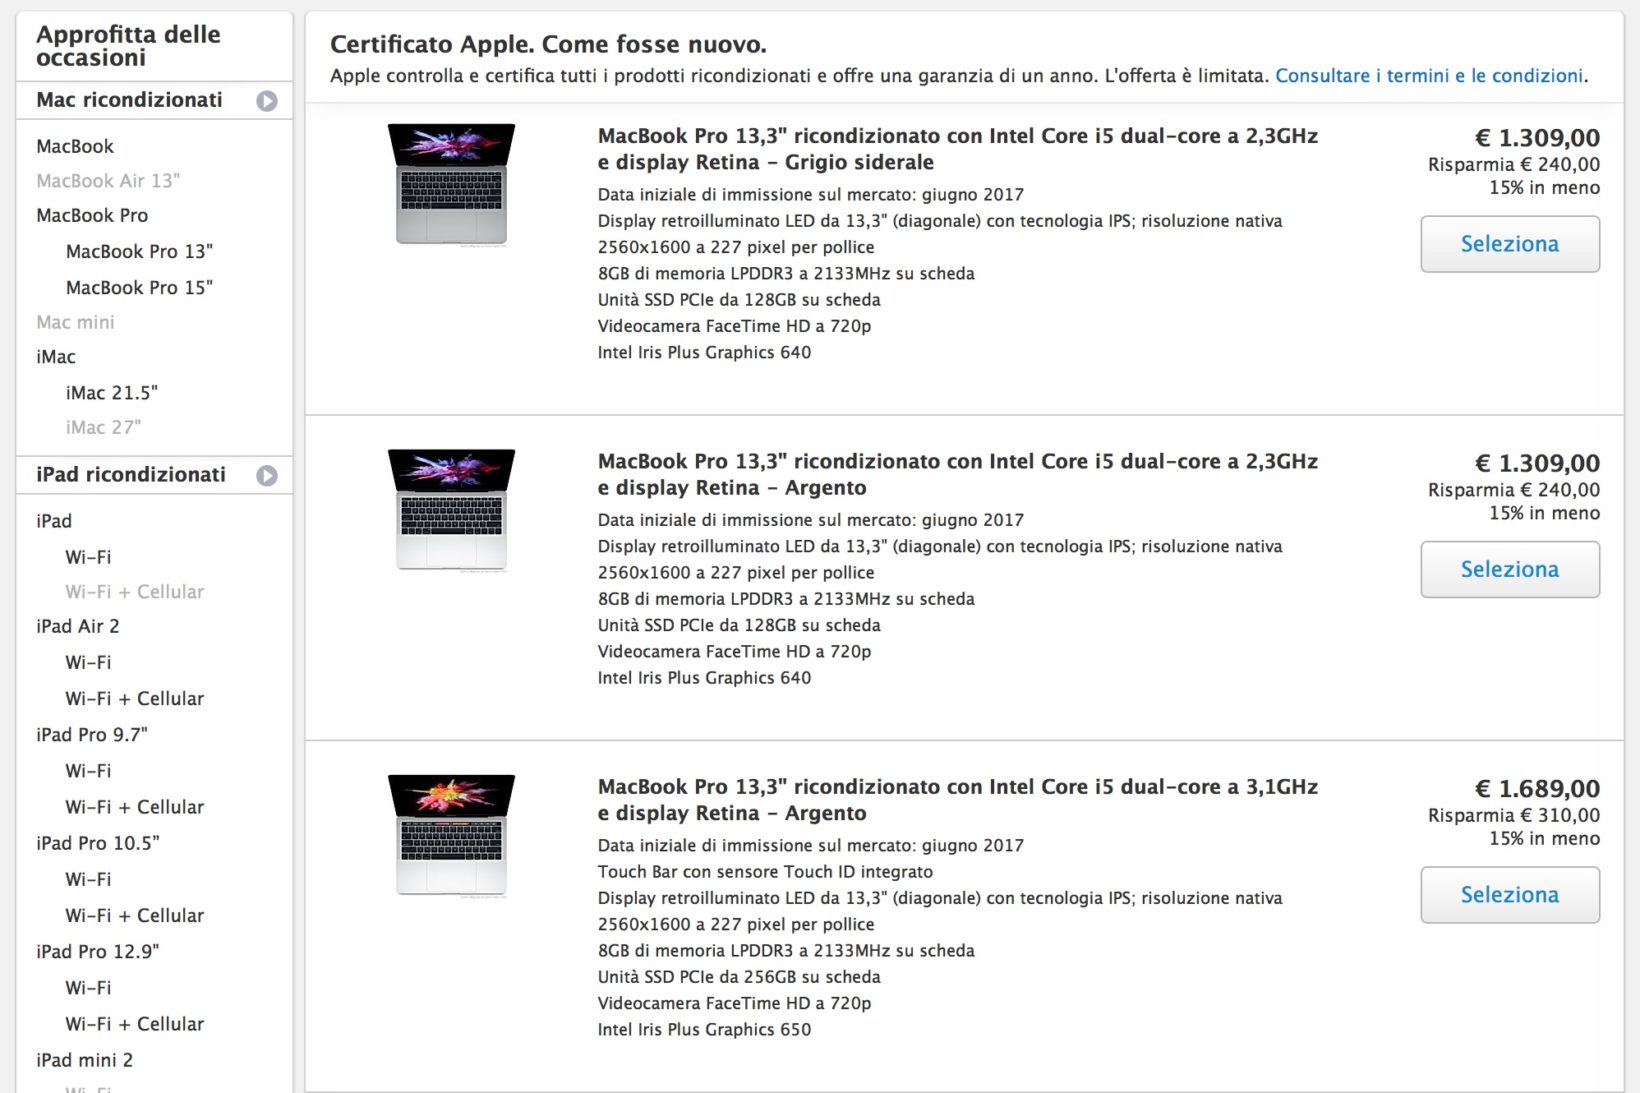 Insoddisfatti dei prezzi dei MacBook Pro 2018? Tra i ricondizionati Apple portatili da 1300 €